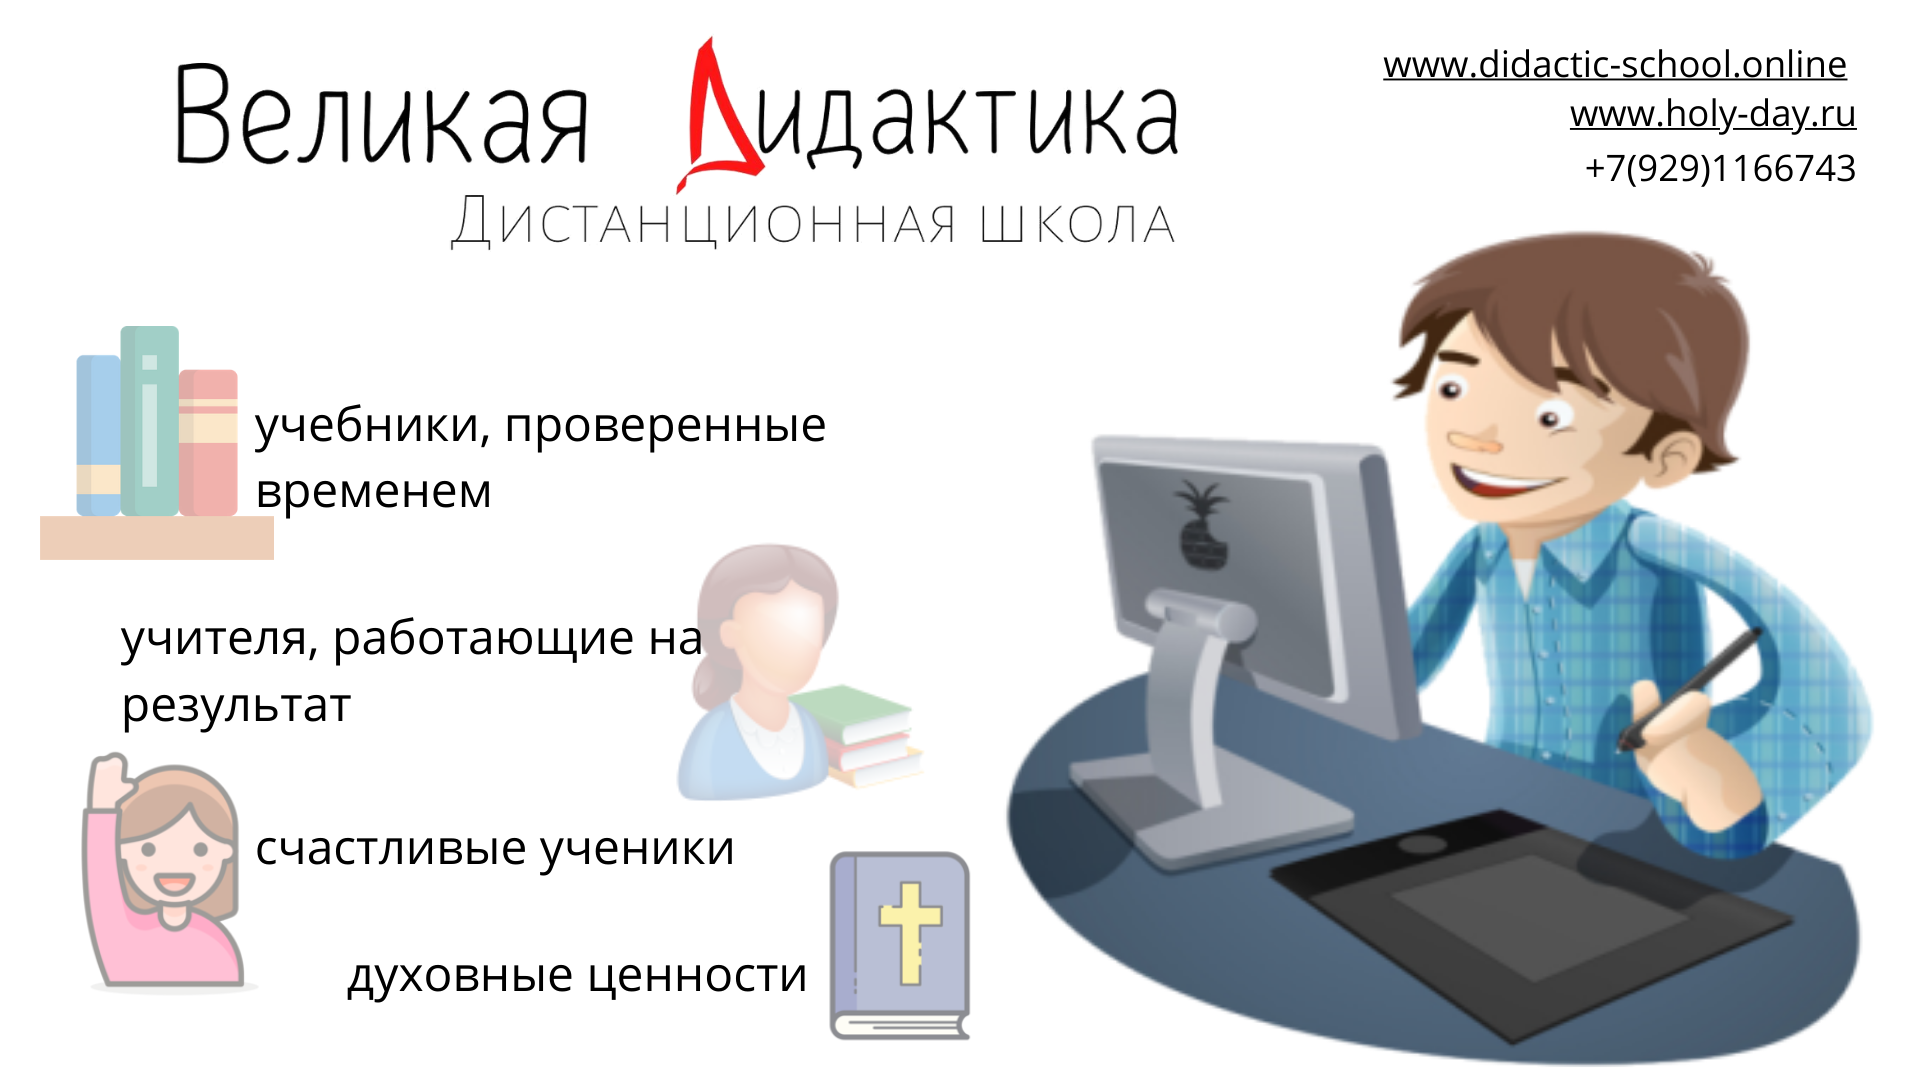 Дистанционное образование. Дистанционное образование в Москве. Дистанционное обучение 2021. Изображения дистанционного образования.